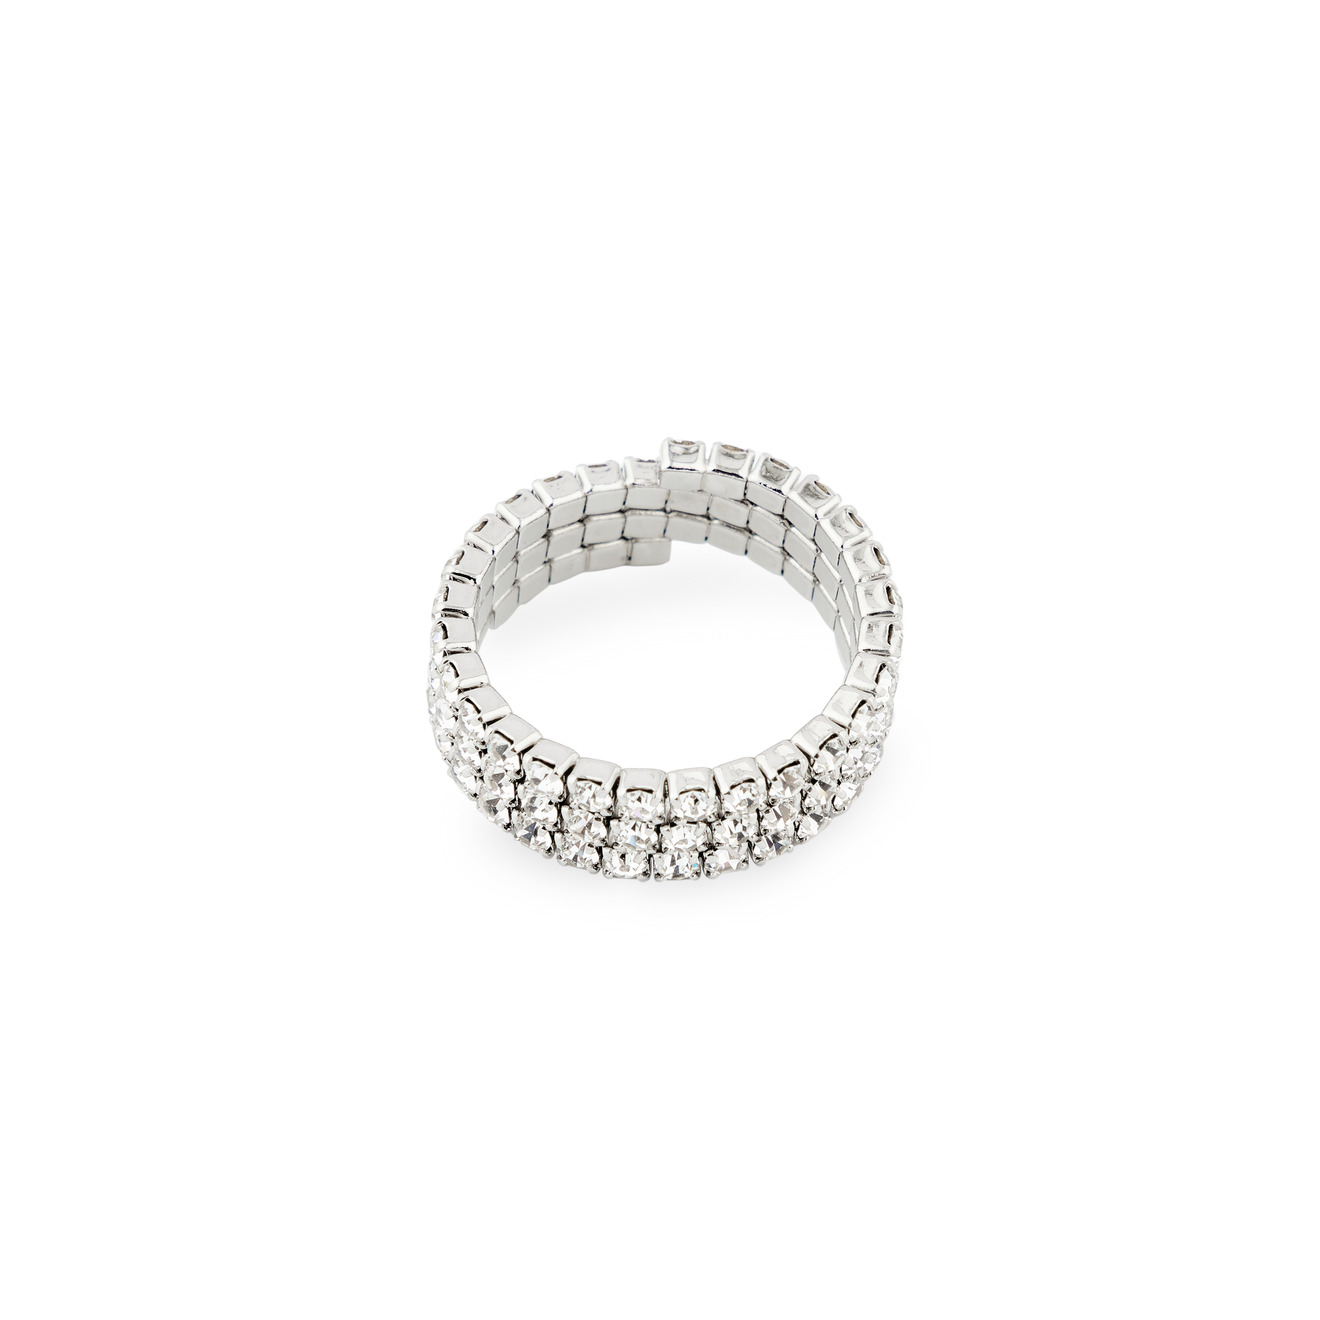 Herald Percy Серебристое кольцо из кристаллов lisa smith серебристое кольцо с кисточкой из цепочек